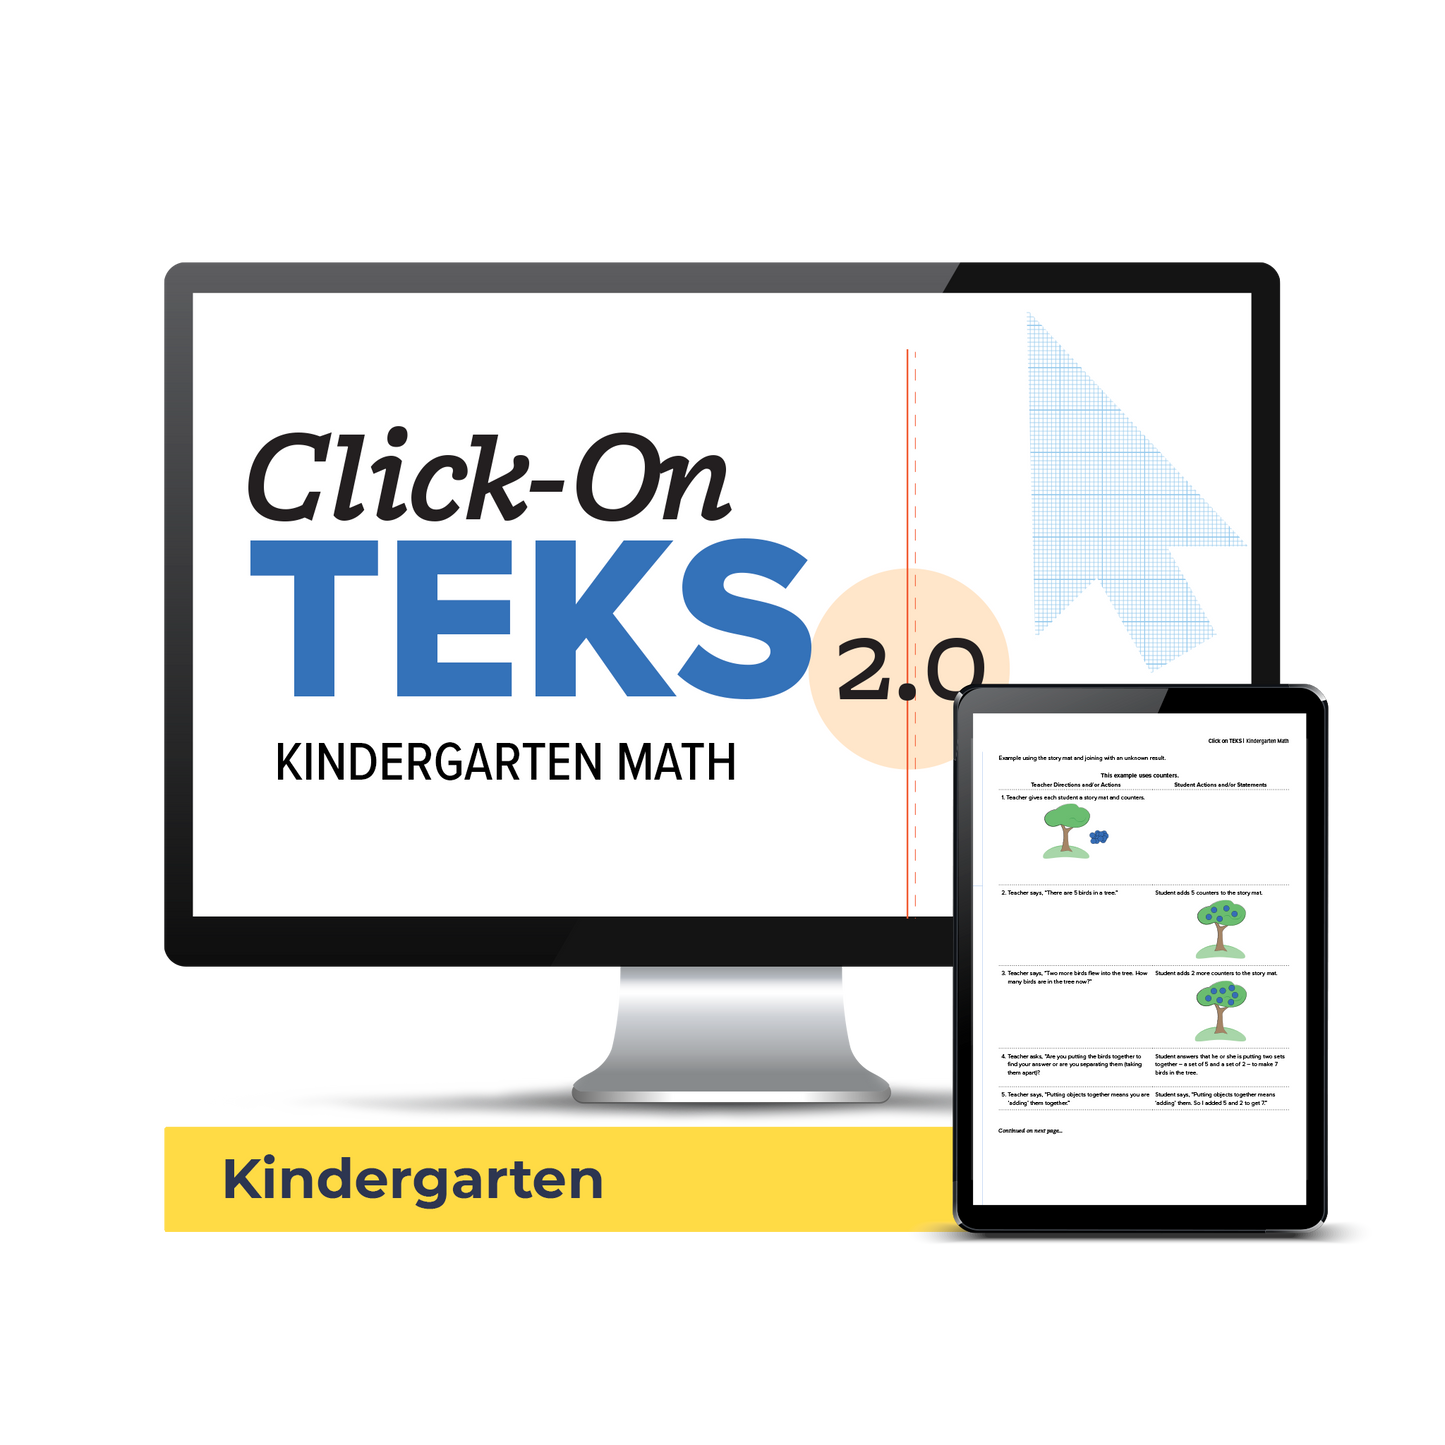 Click-On TEKS 2.0: Kindergarten Math (Downloadable PDF)